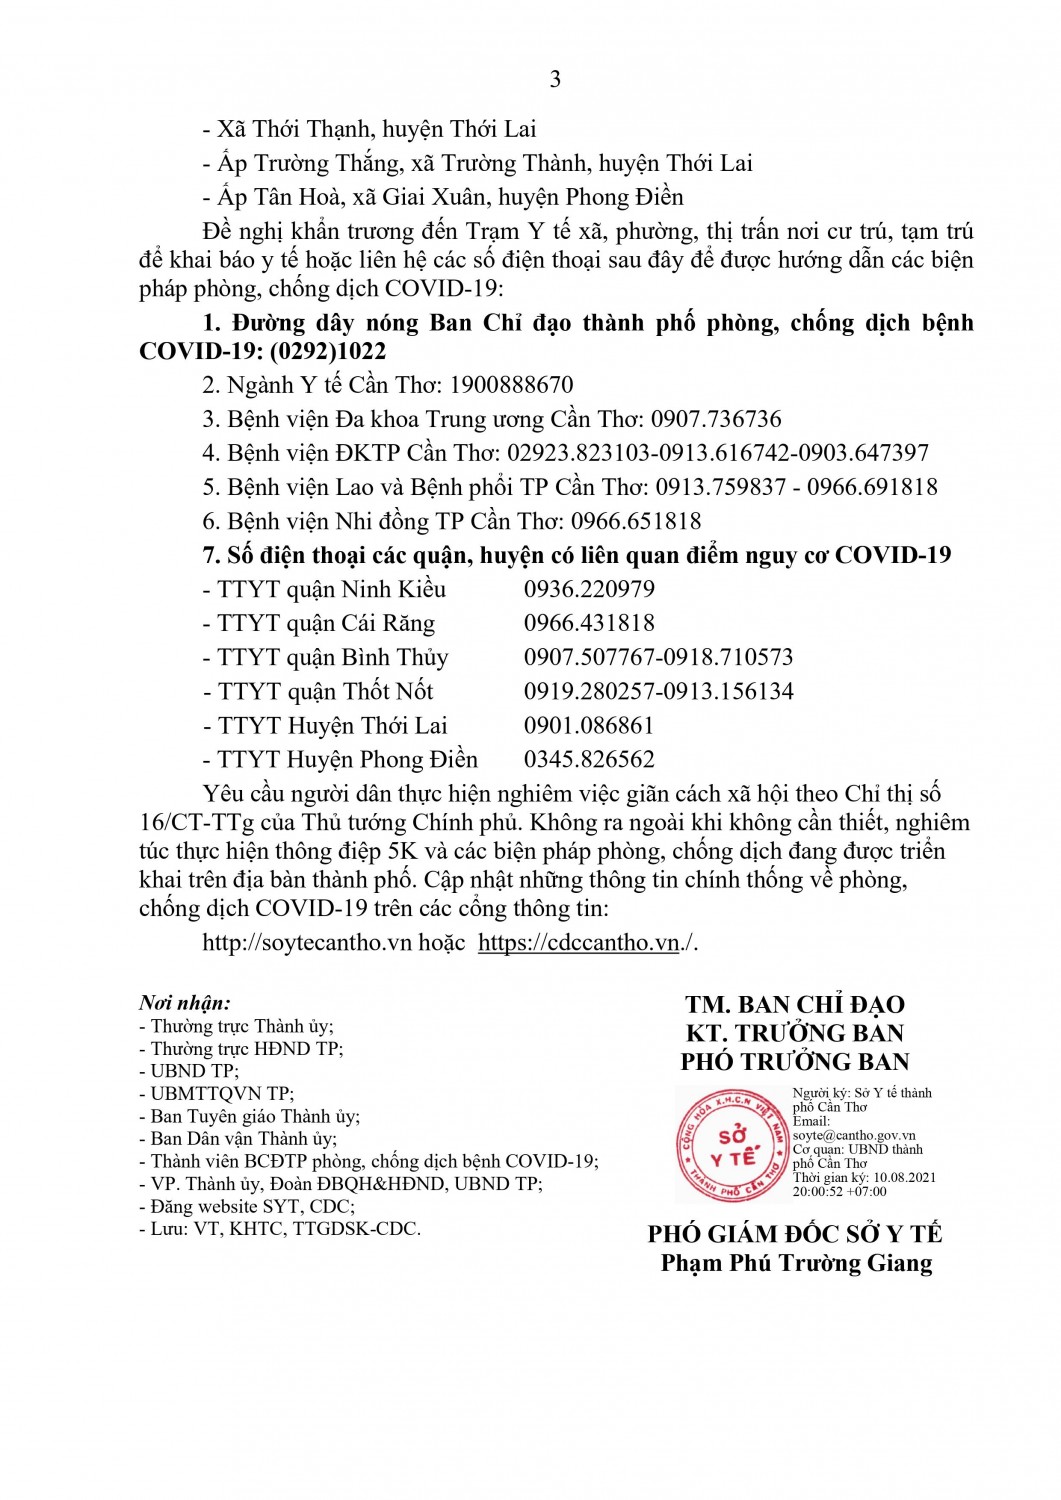 3761 TC BCD ThongCao BaoChi Ngay 10 8 2021 (3)